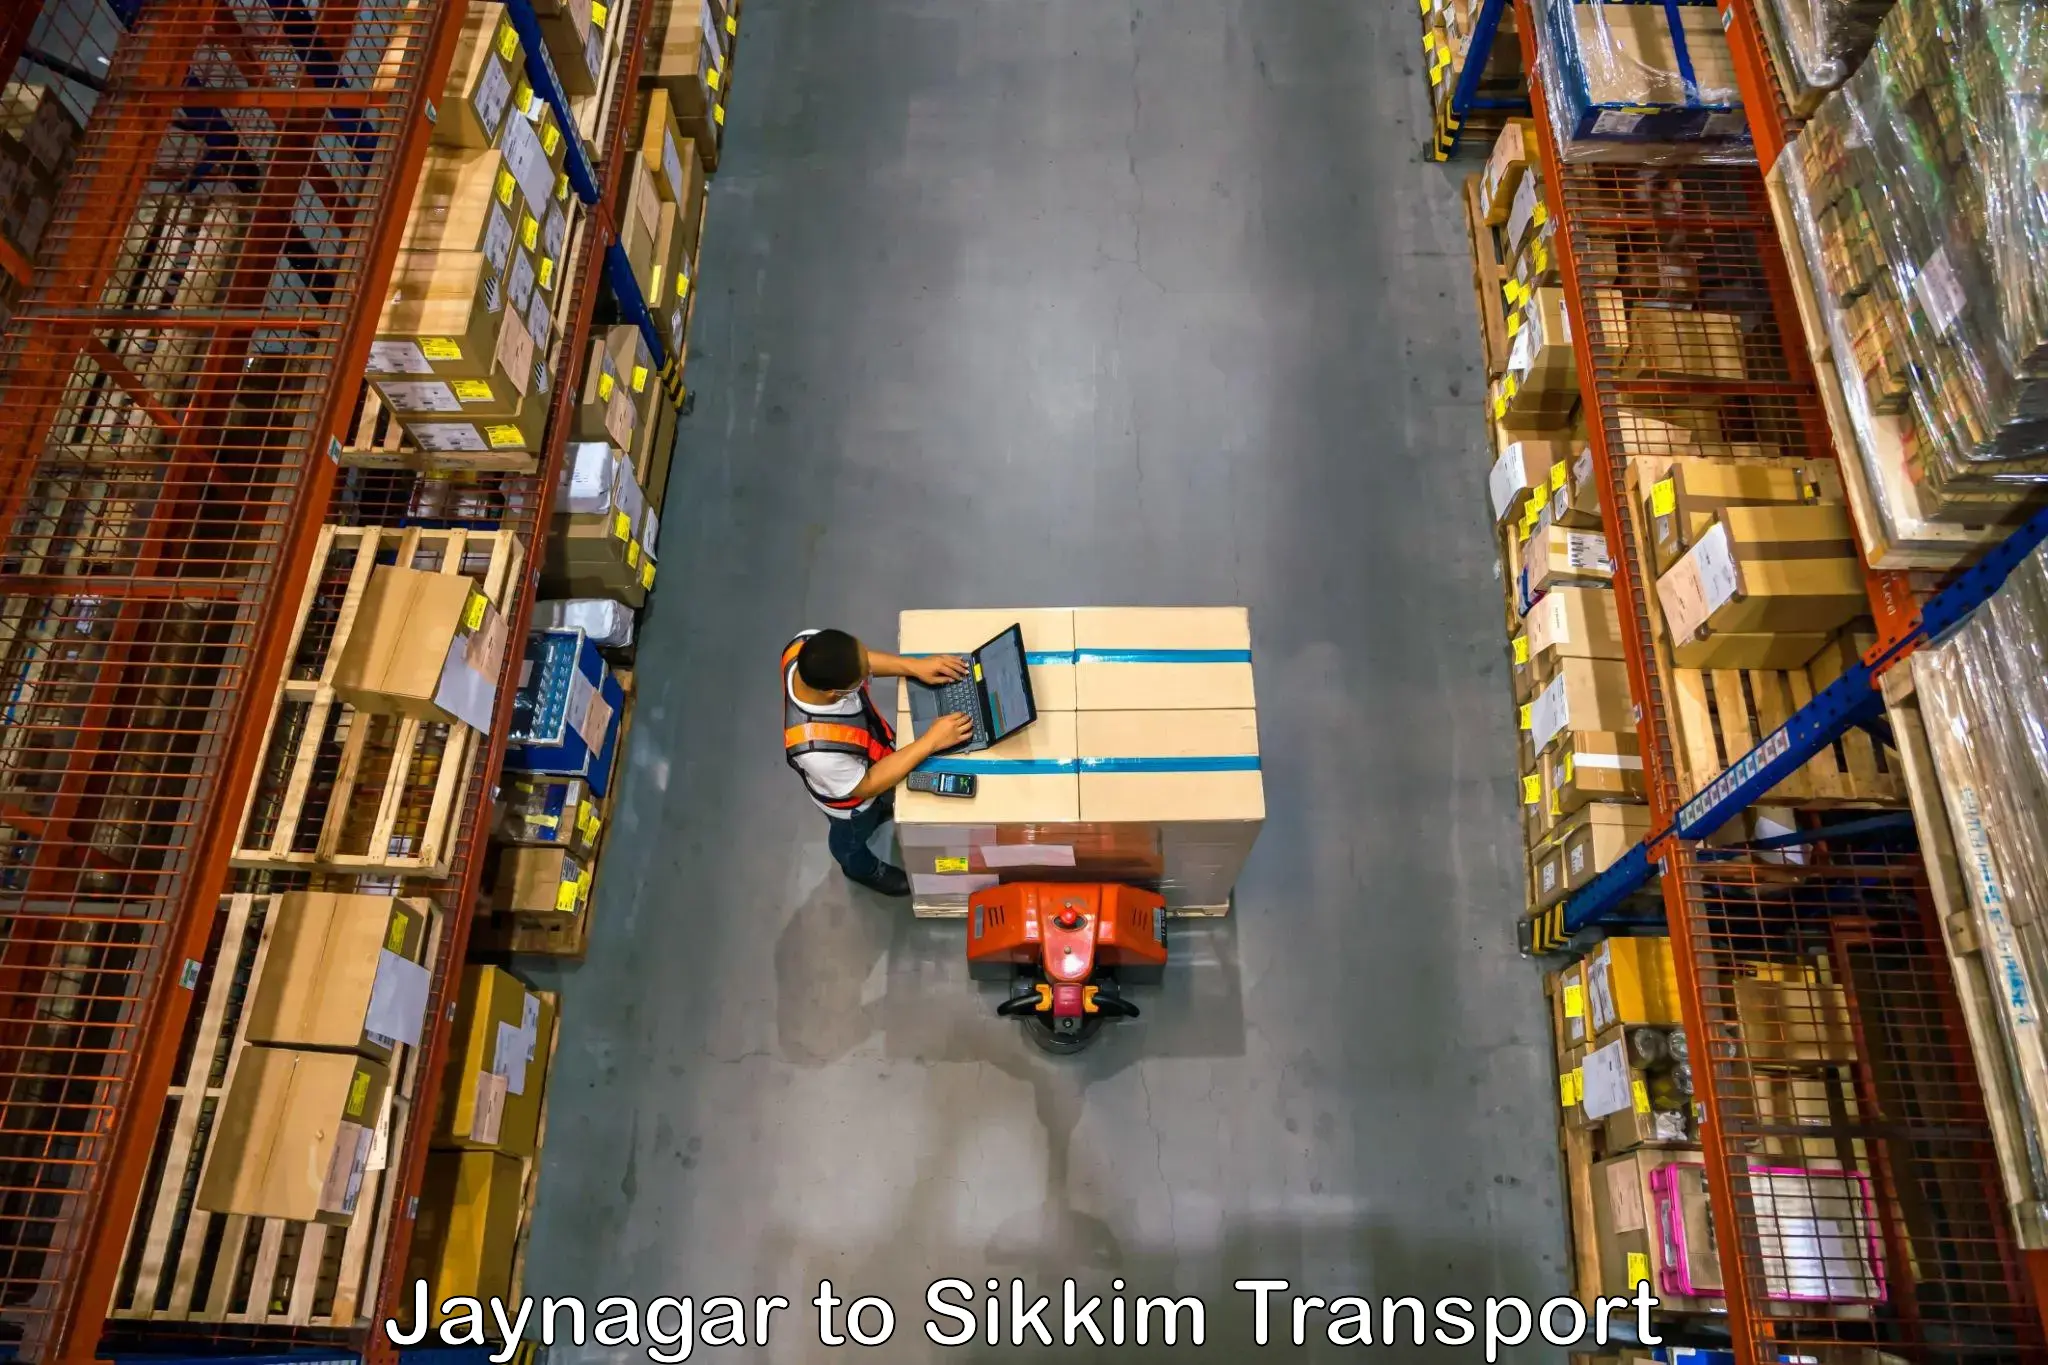 Bike shipping service Jaynagar to Mangan